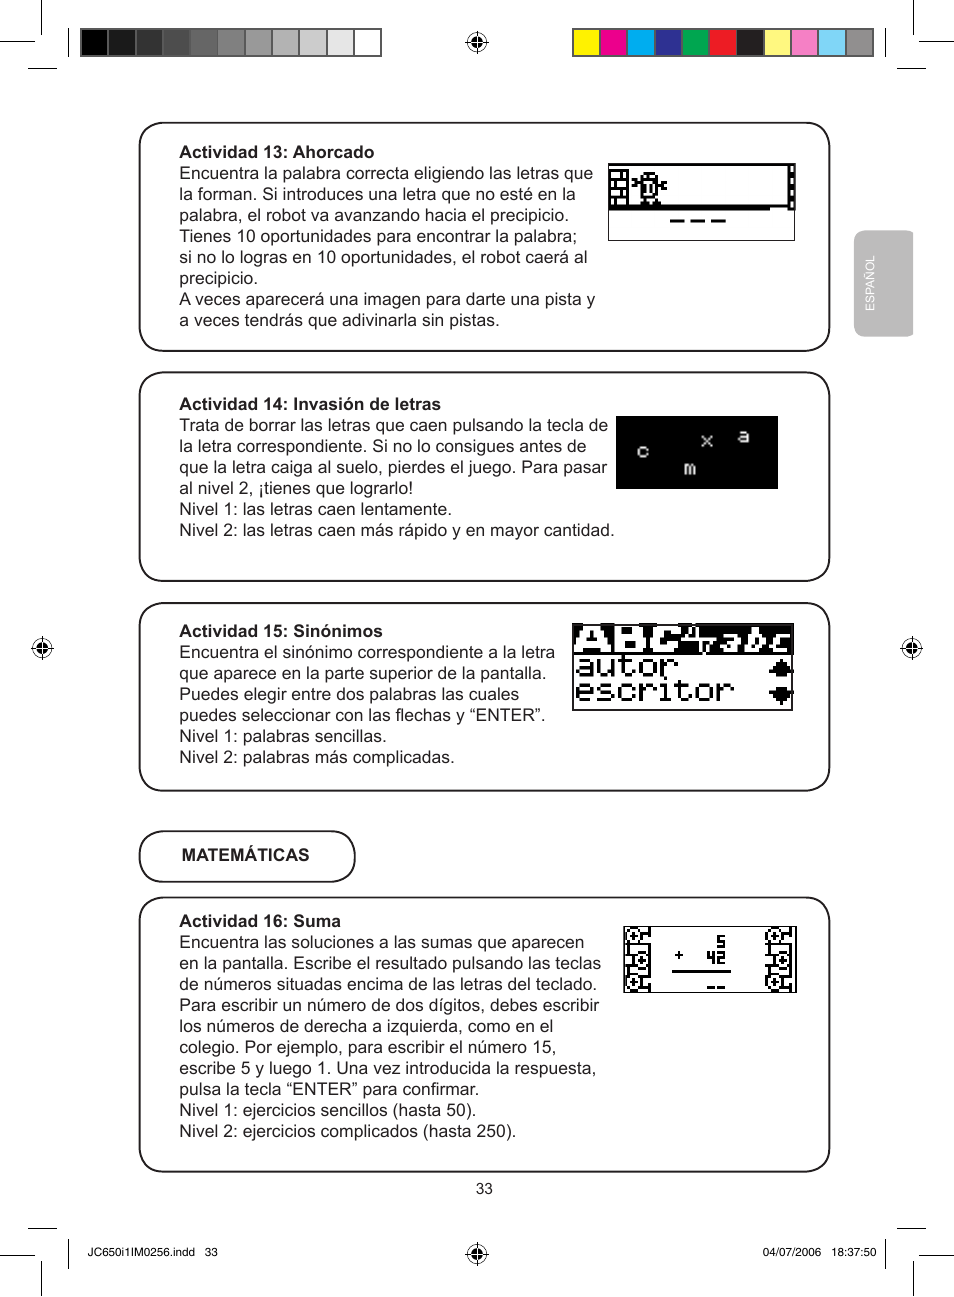 Lexibook JC650i1 User Manual | Page 33 / 43 | Original mode